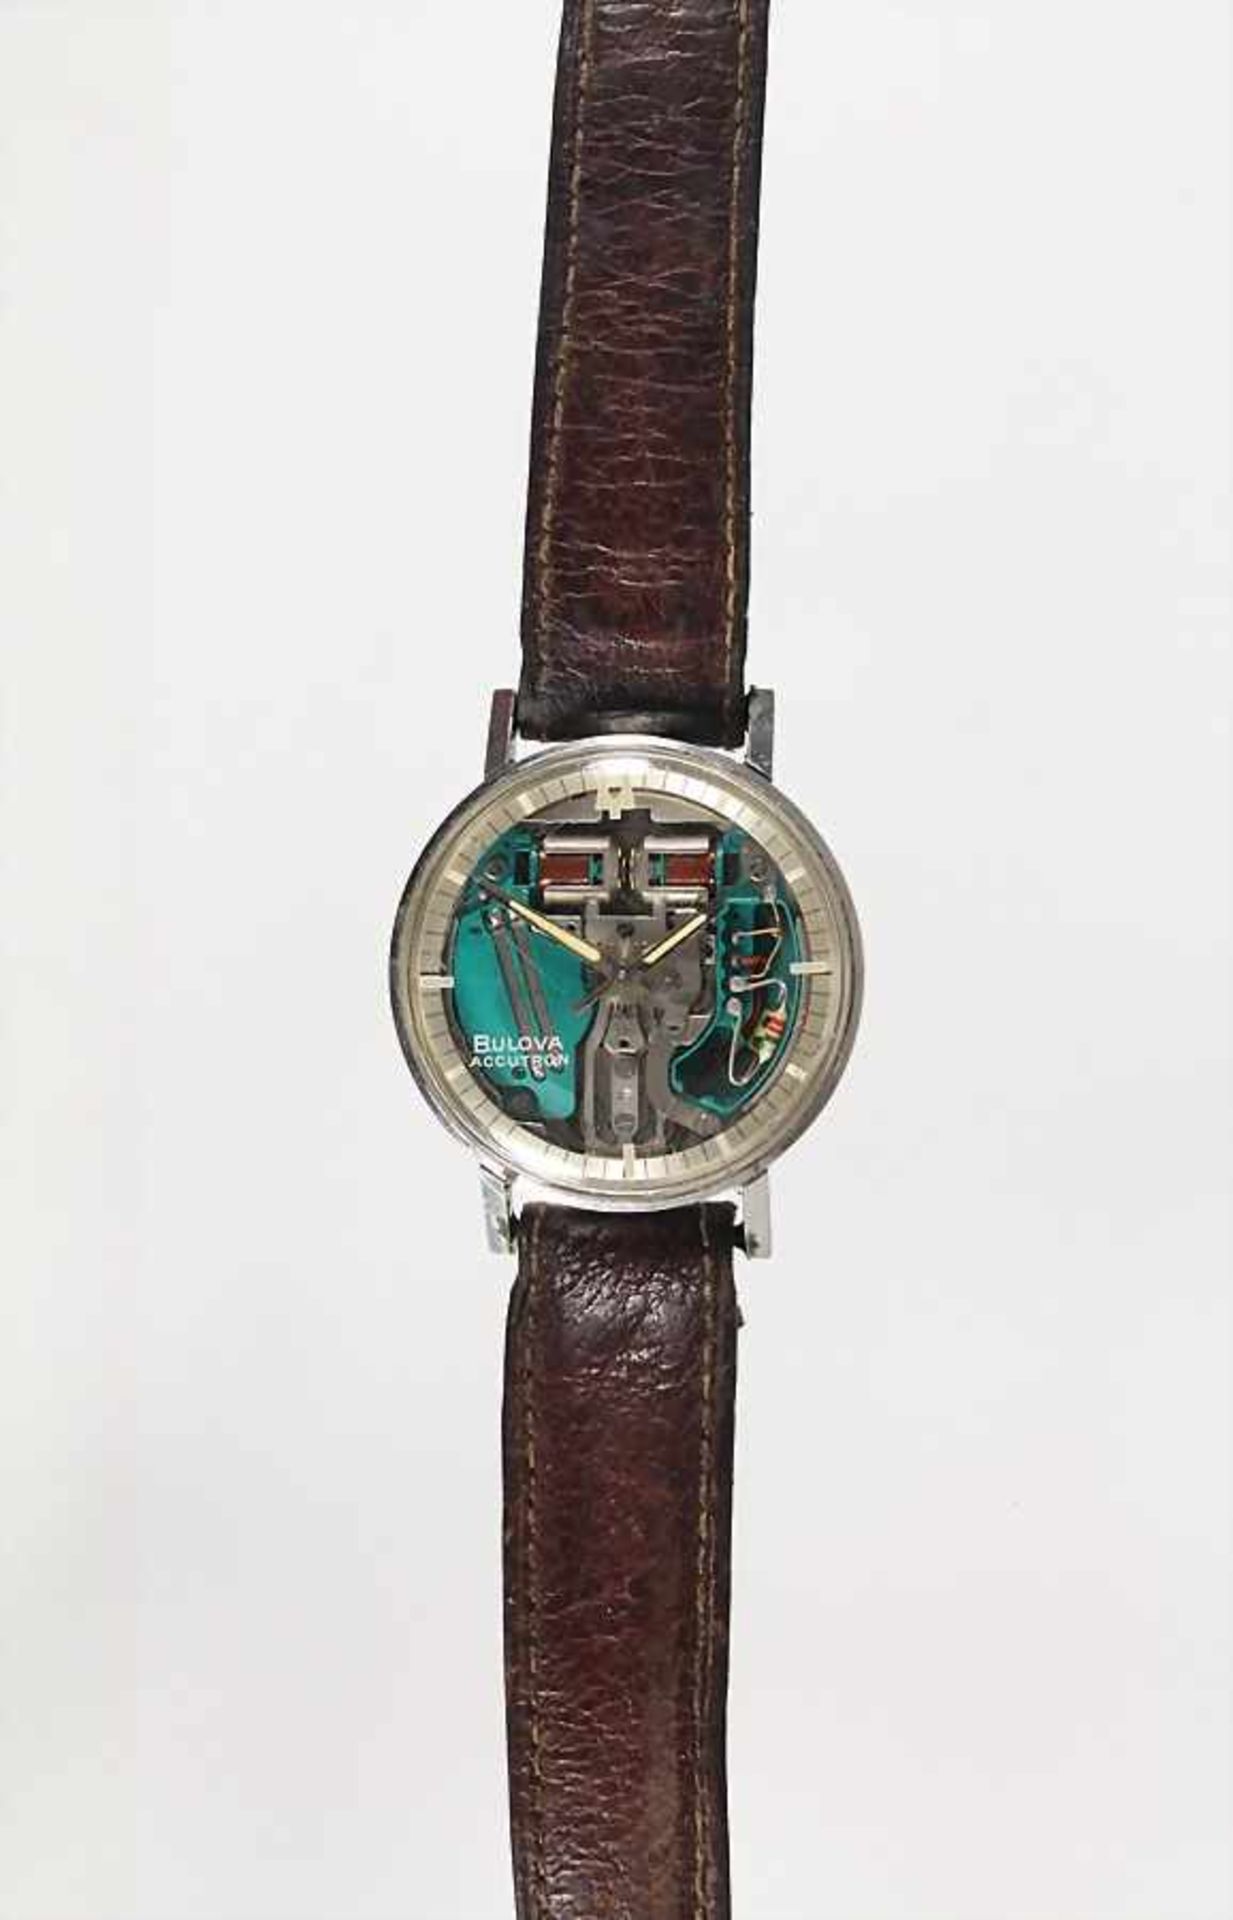 Herren-Armbanduhr, "BULOVA ACCUTRON" Space View mit Stimmgabelwerk, Schweiz 1960/70er Jahre,